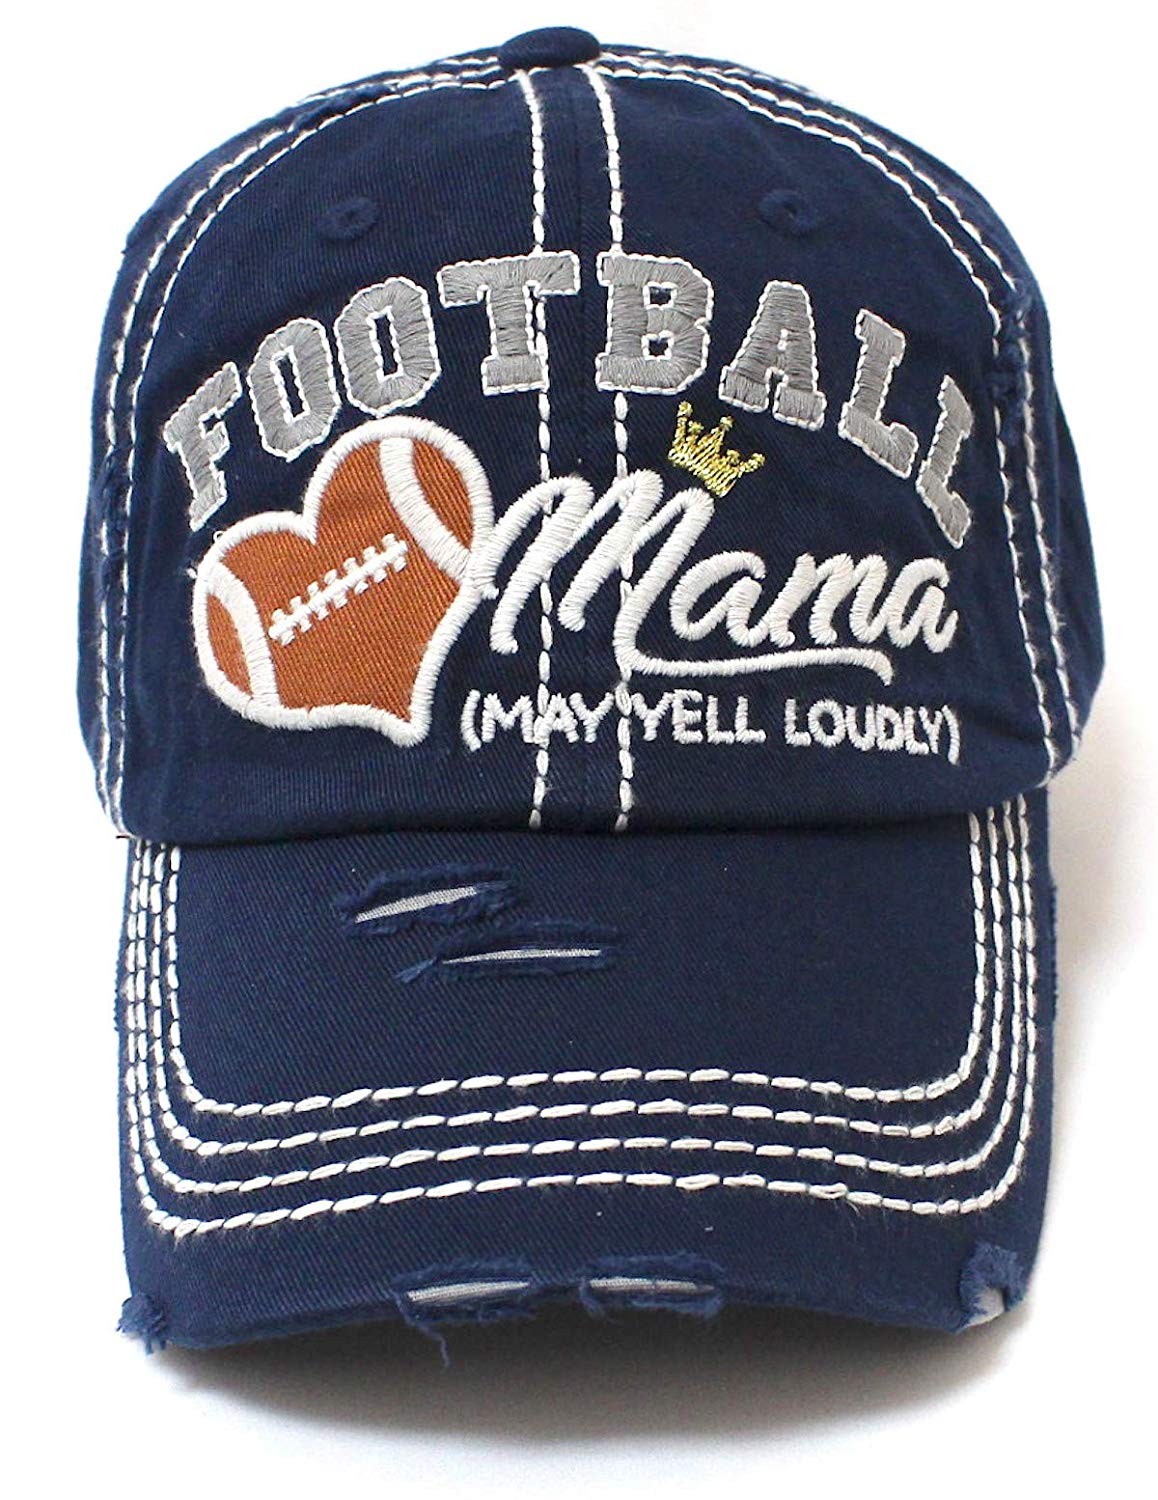 CAPS 'N VINTAGE Navy Football Mama Cheer Queen Hat - Caps 'N Vintage 